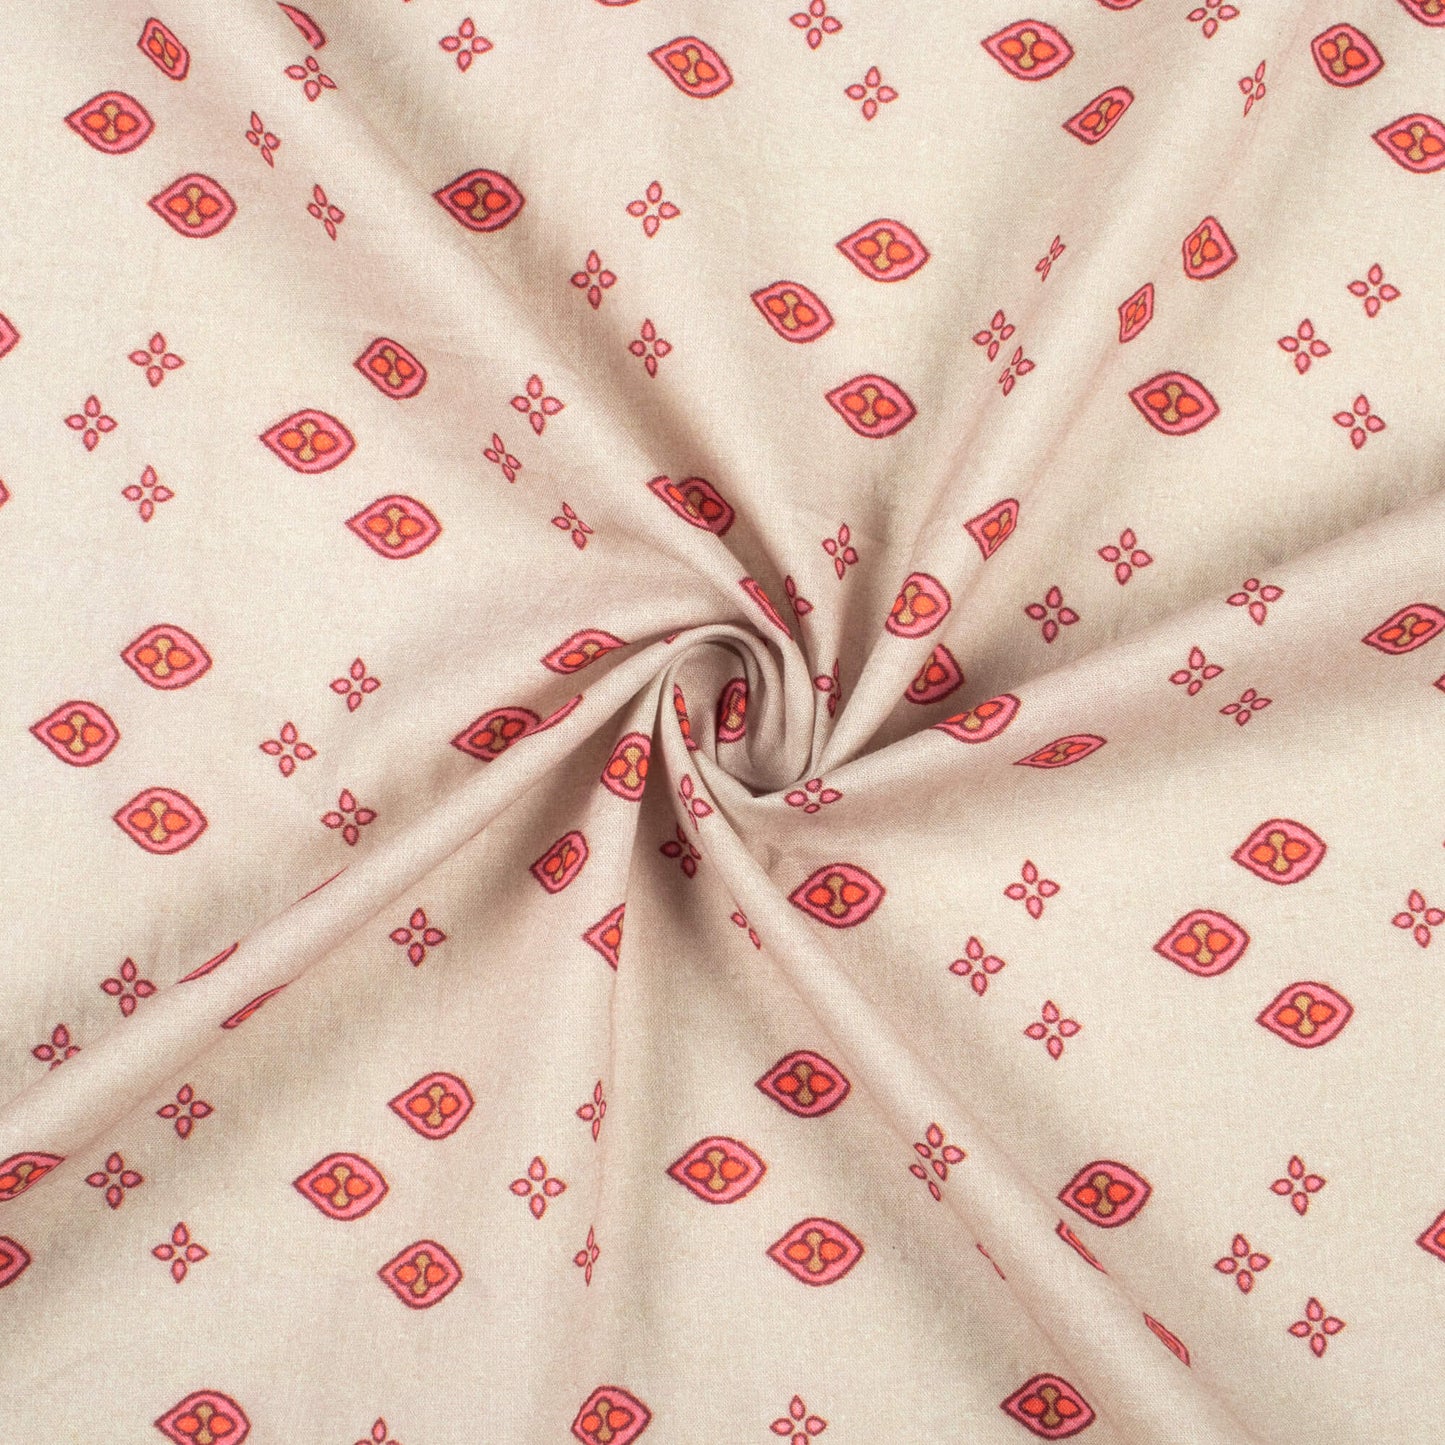 Ecru Beige And Pink Geometric Digital Print Cotton Cambric Fabric